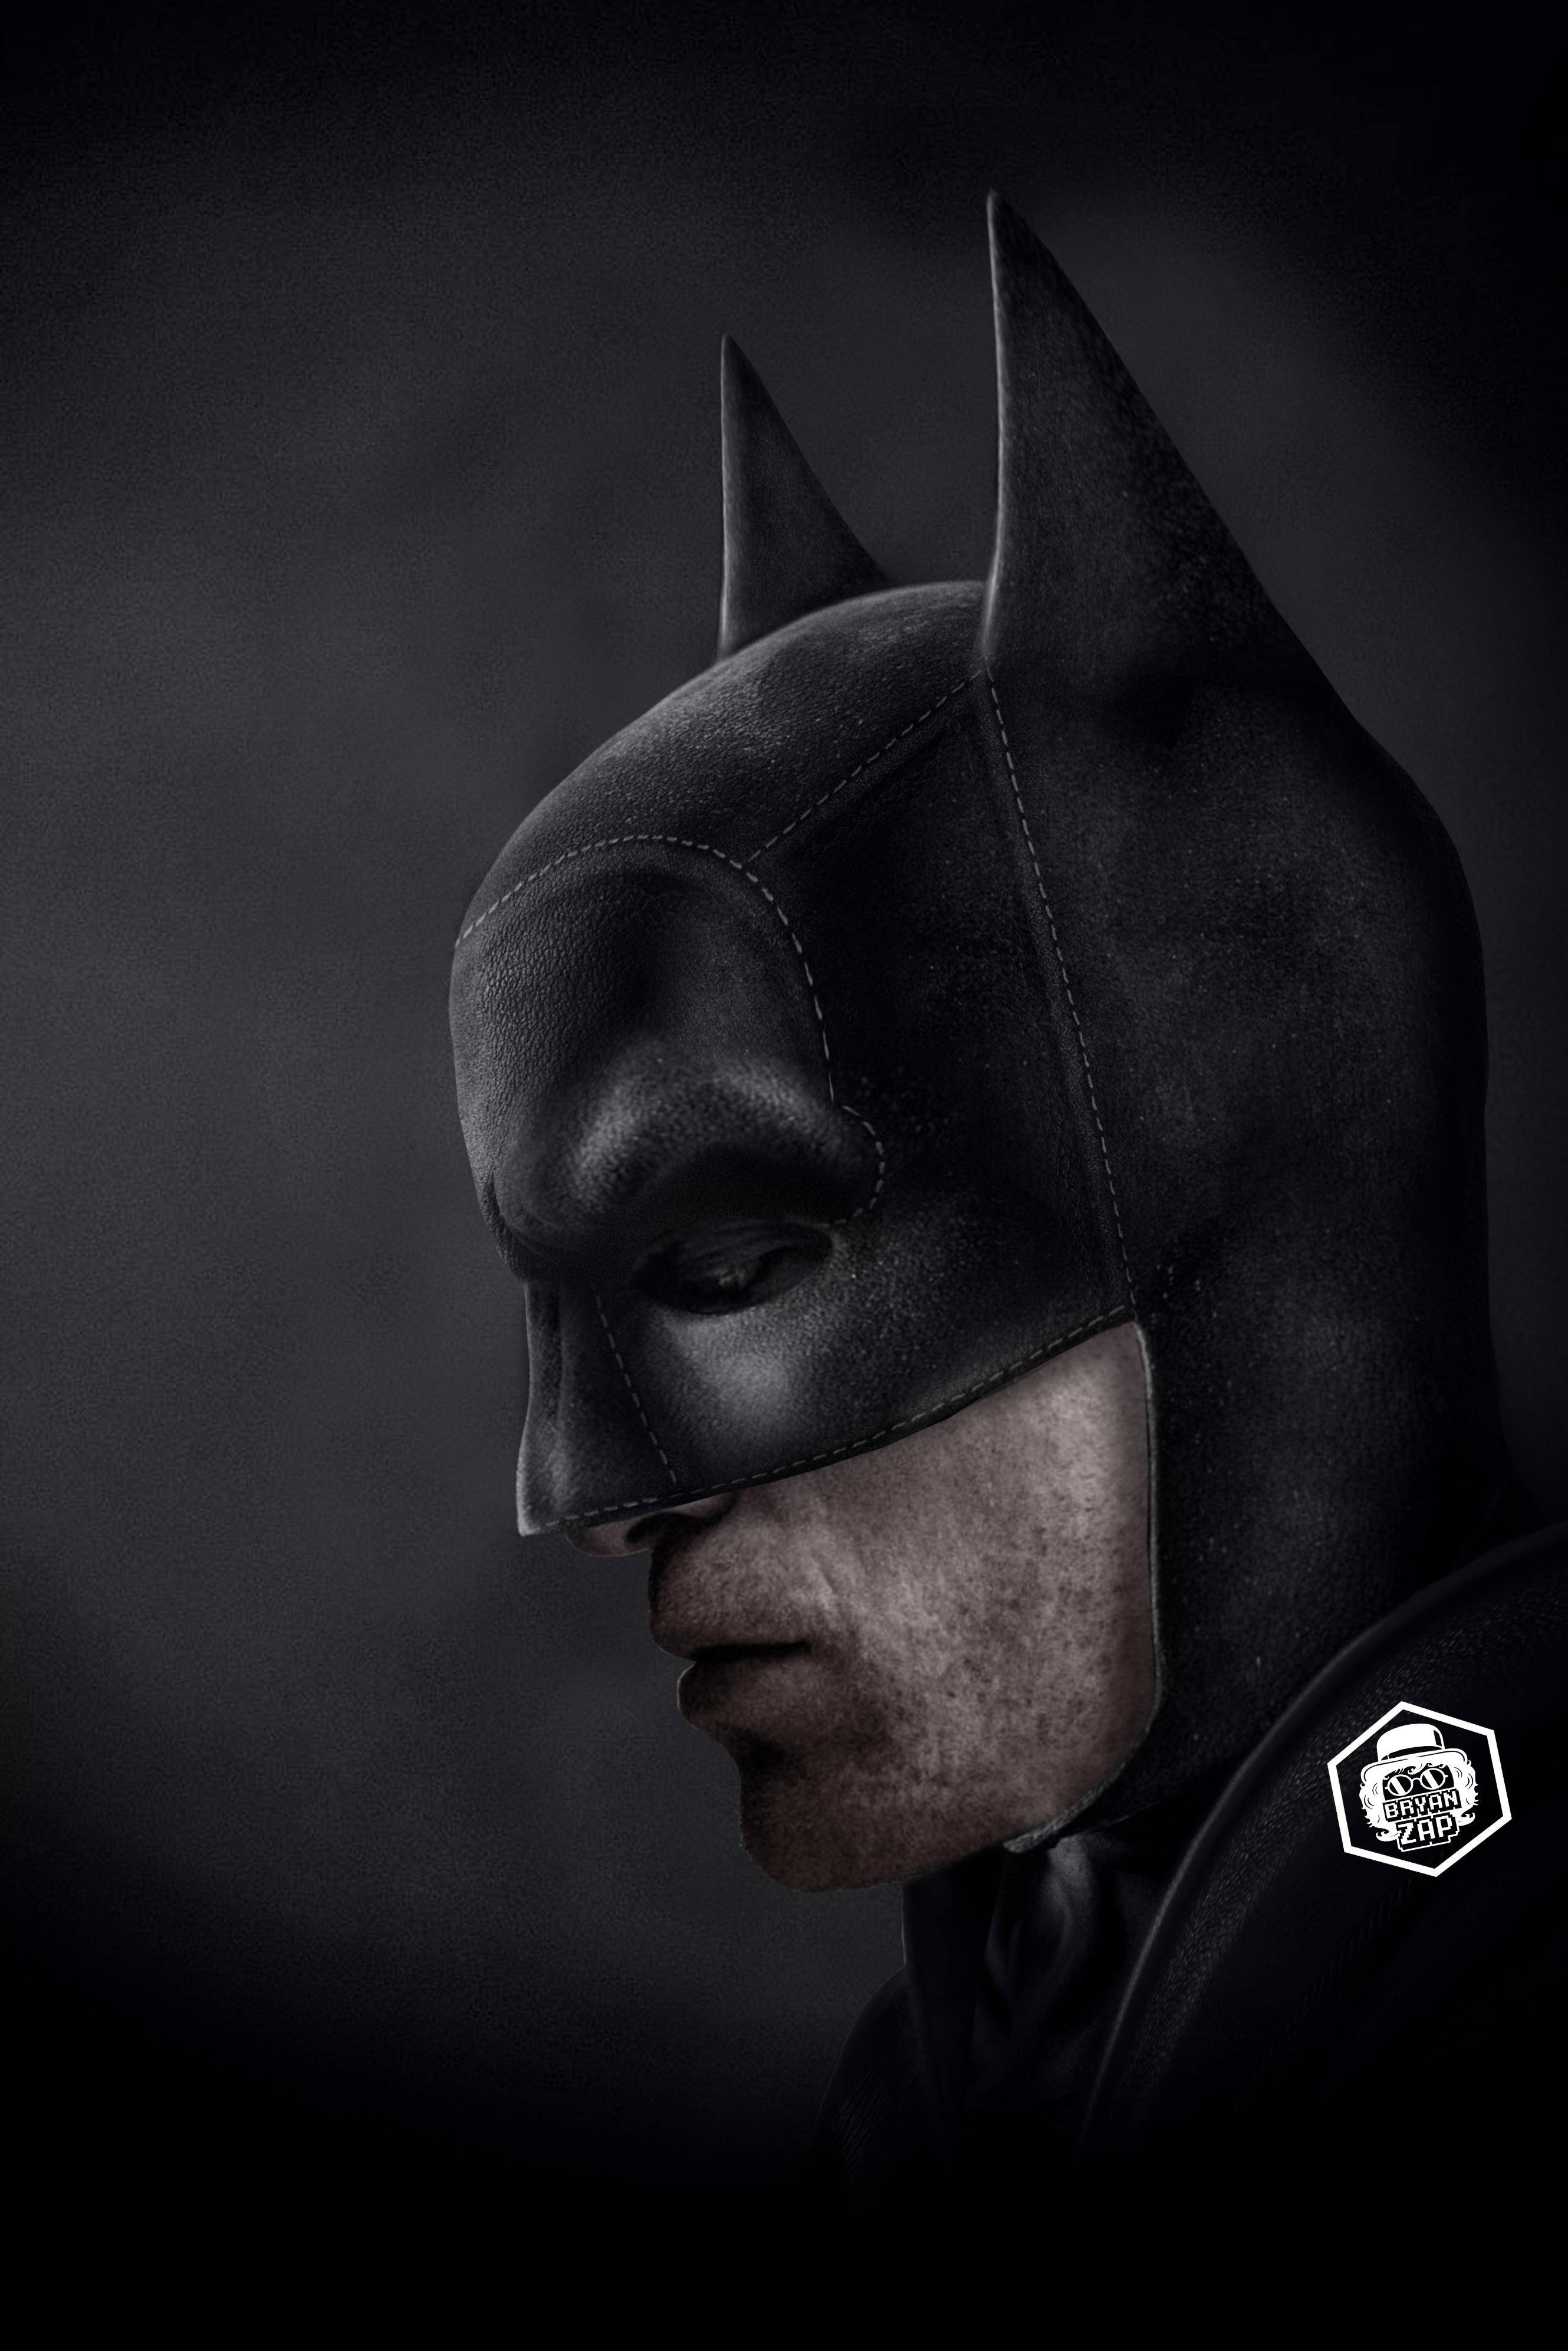 Robert Pattinson Batman Cowl by Bryanzap on DeviantArt